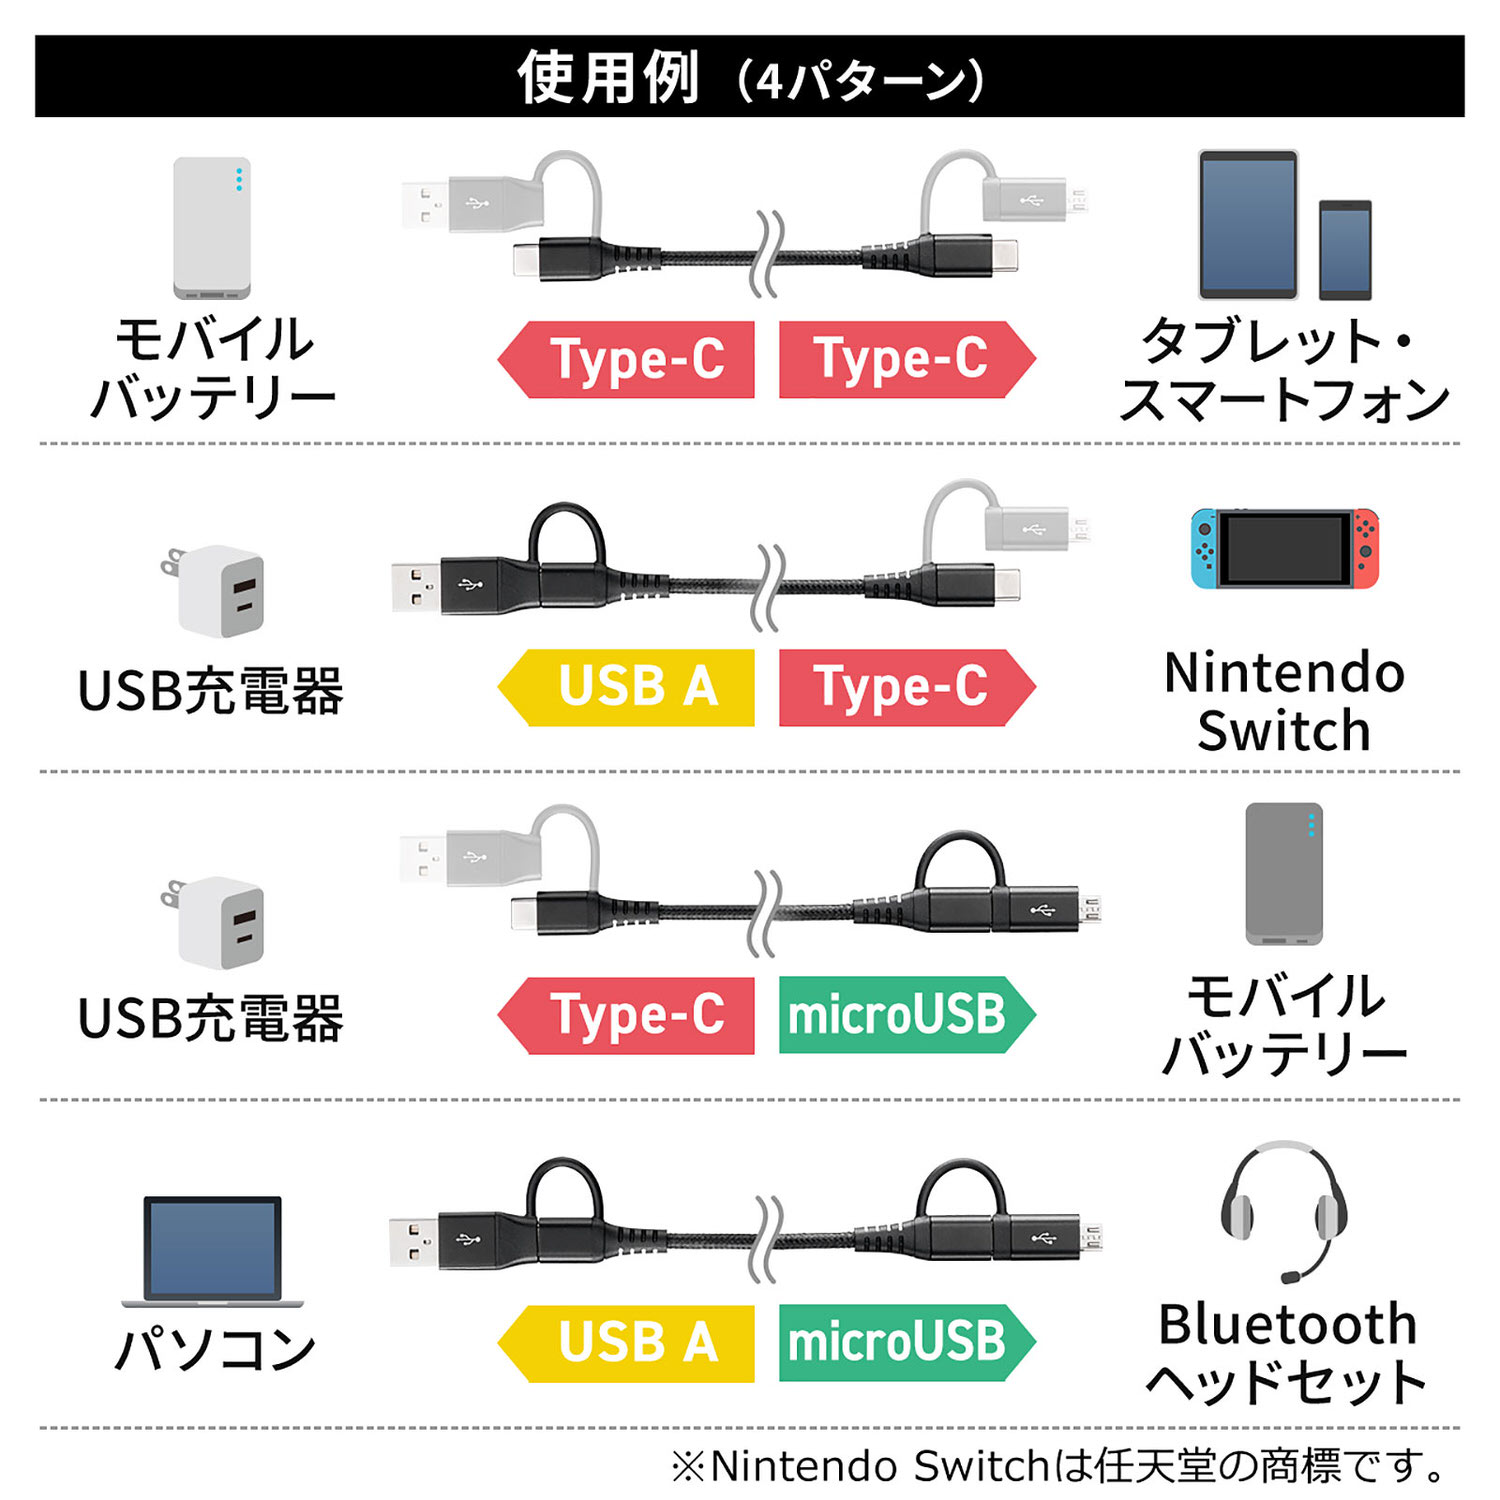 Sanwa 500 USB075 002 27